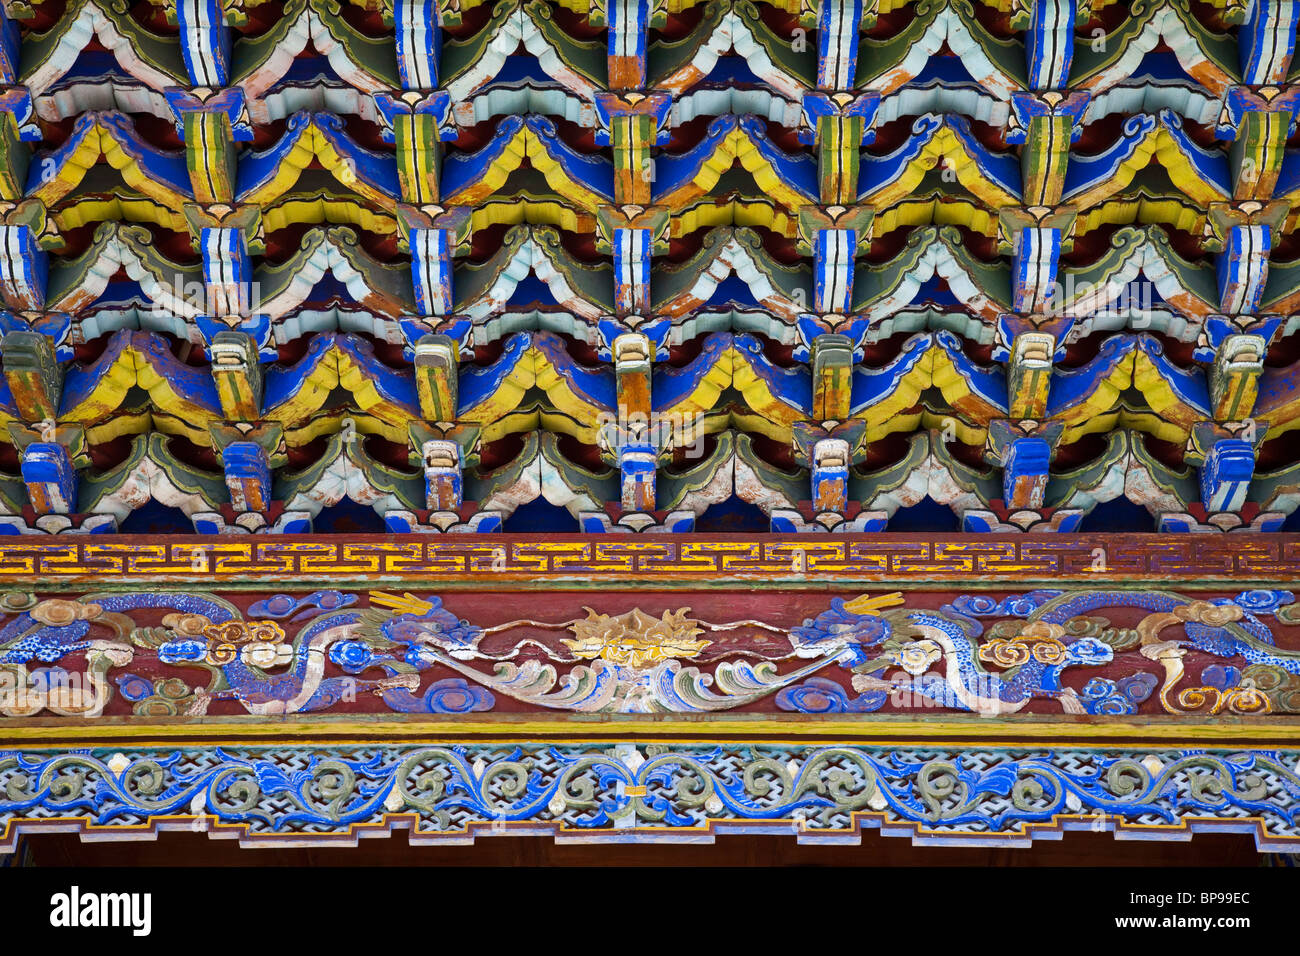 Cornicione decorativo sotto il tempio buddista a Mu residenza familiare, la città vecchia di Lijiang, nella provincia dello Yunnan in Cina Foto Stock